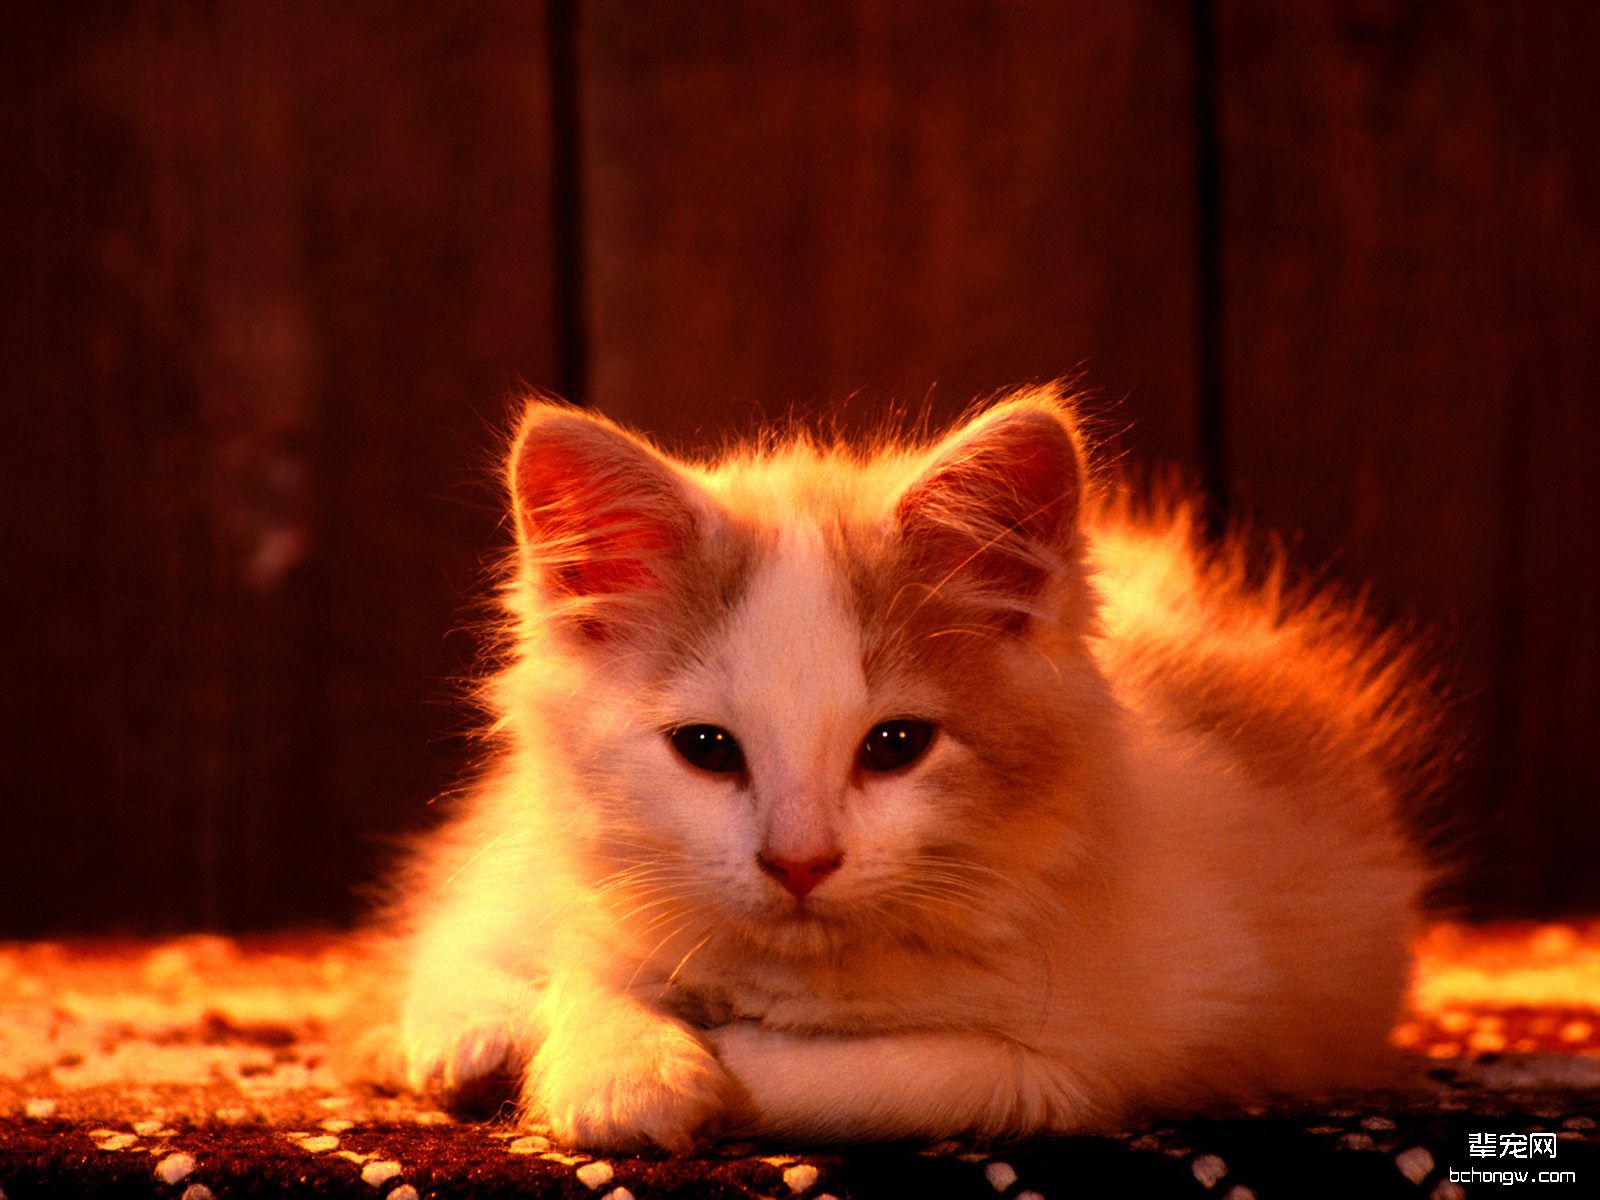 高清晰趴在地上的小黄猫壁纸